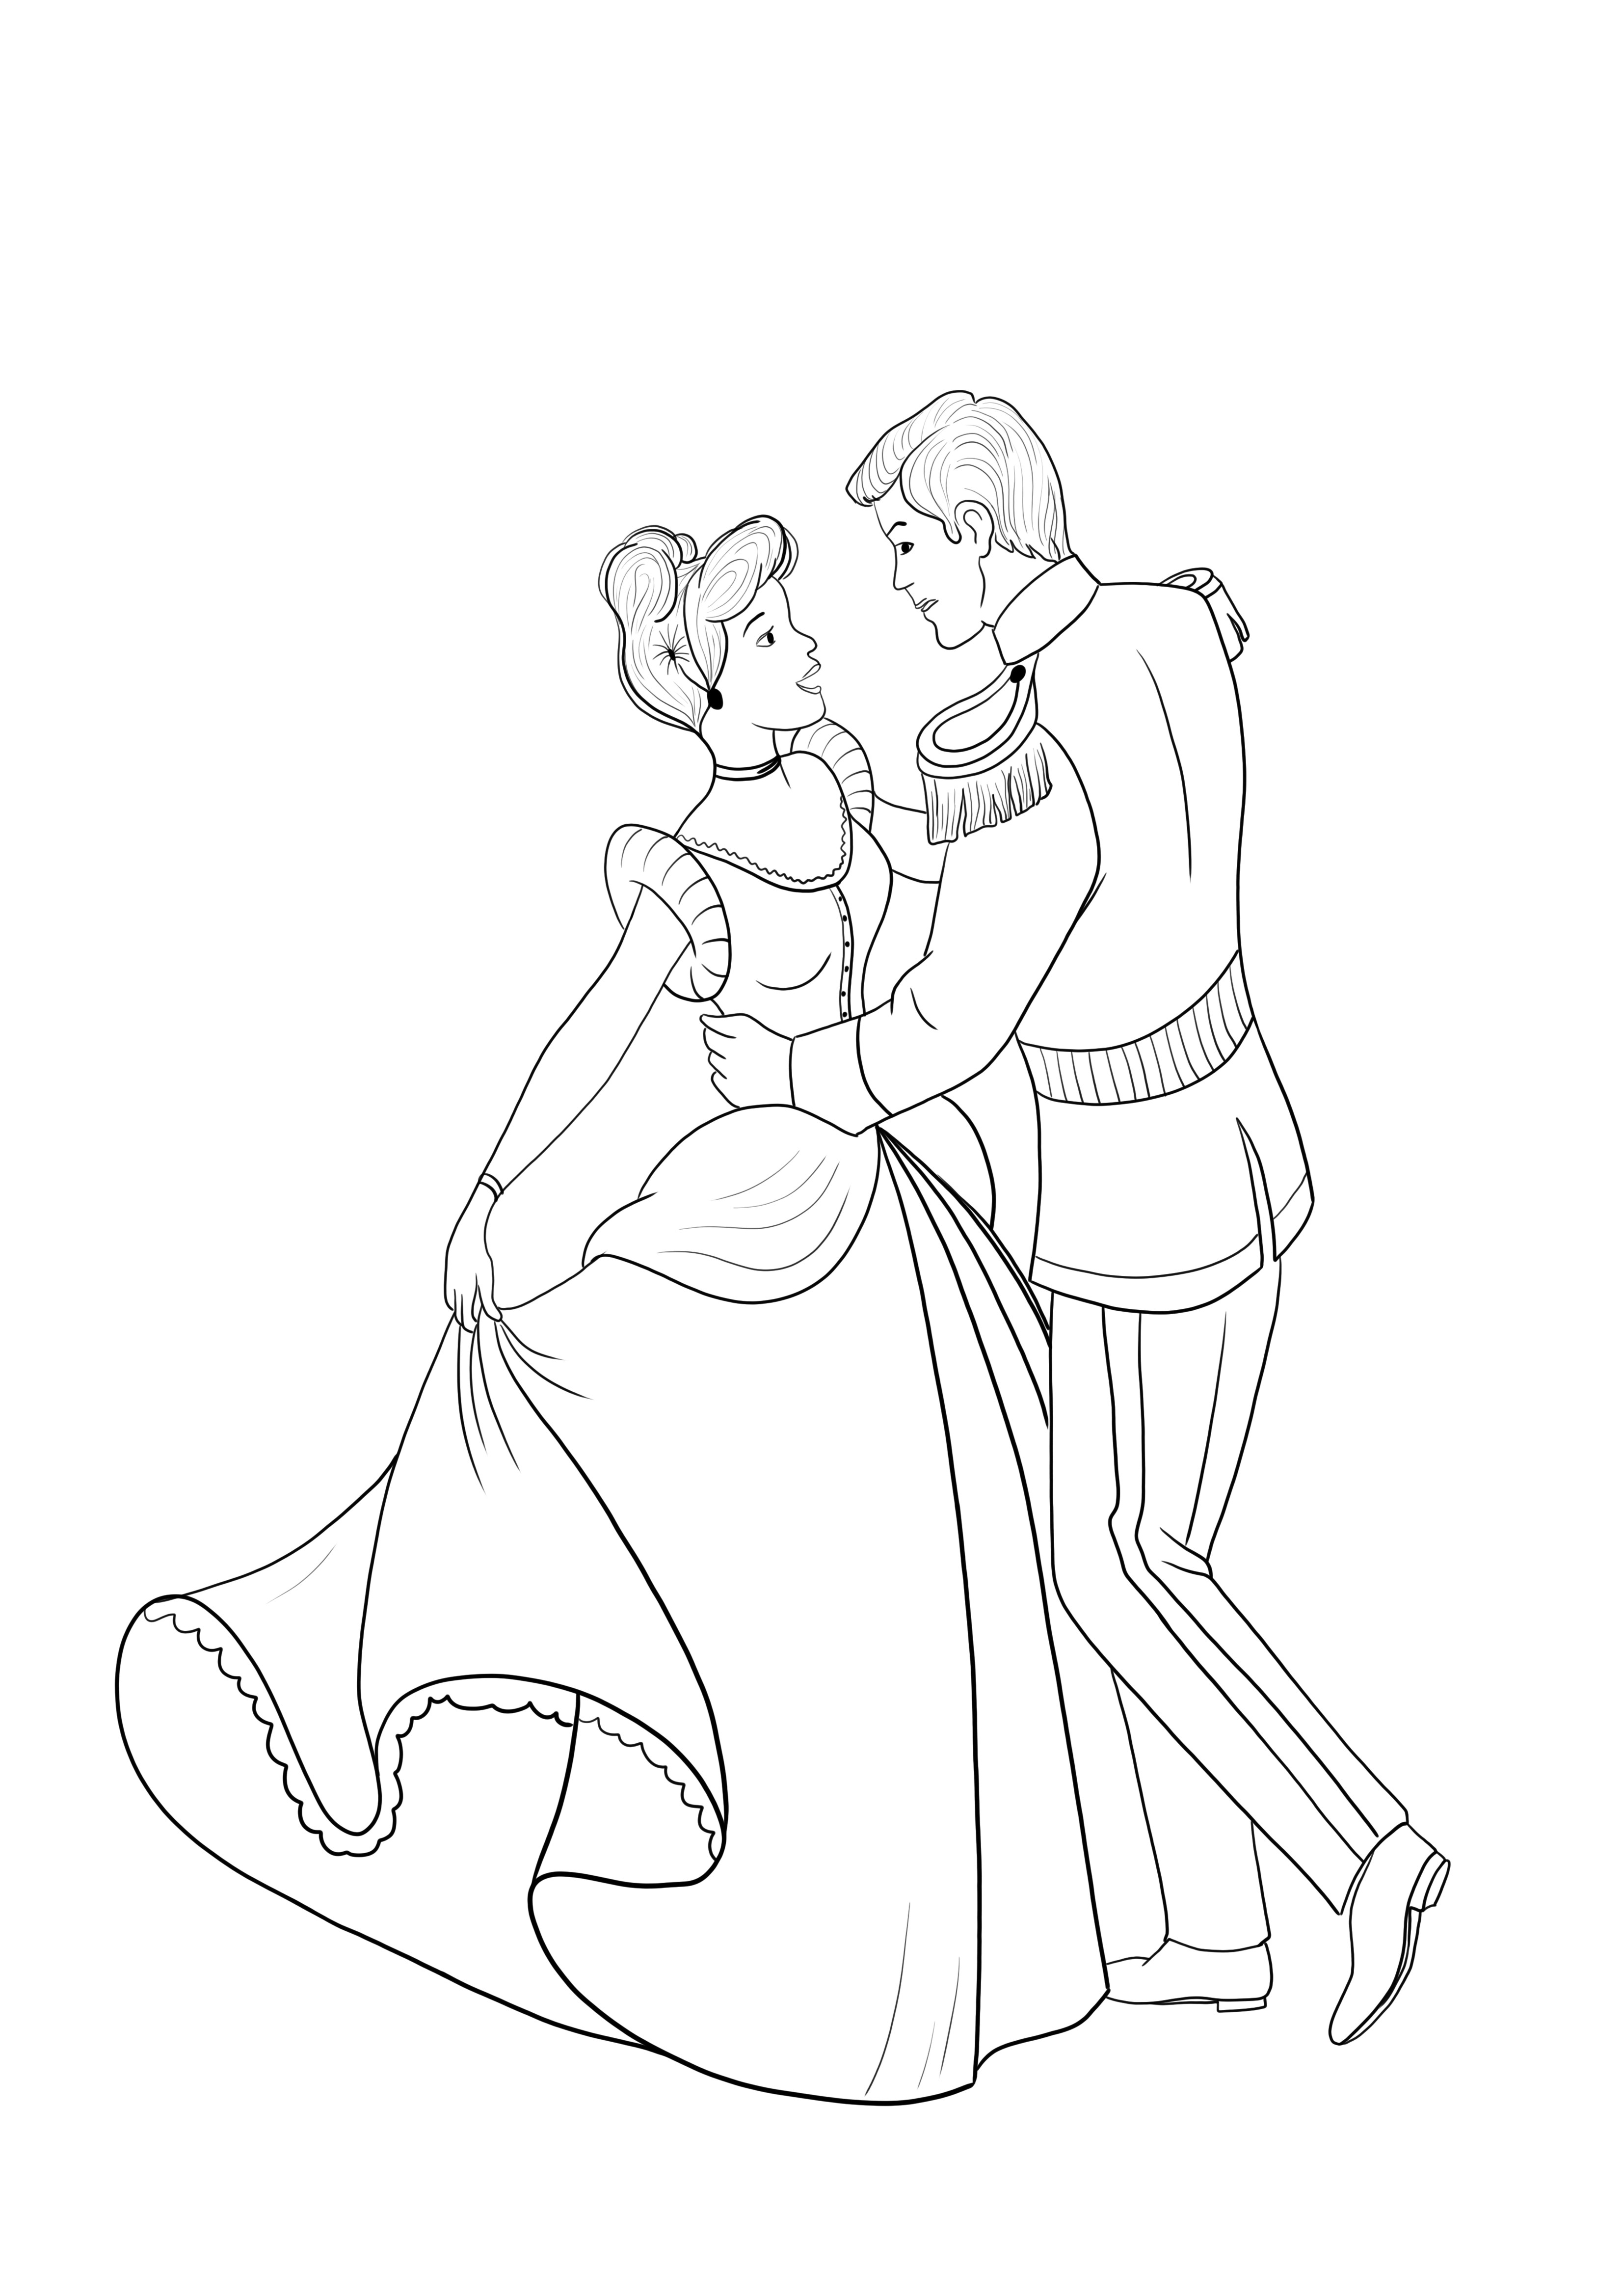 Külkedisi ve Prens dans eden boyama sayfası ücretsiz indir